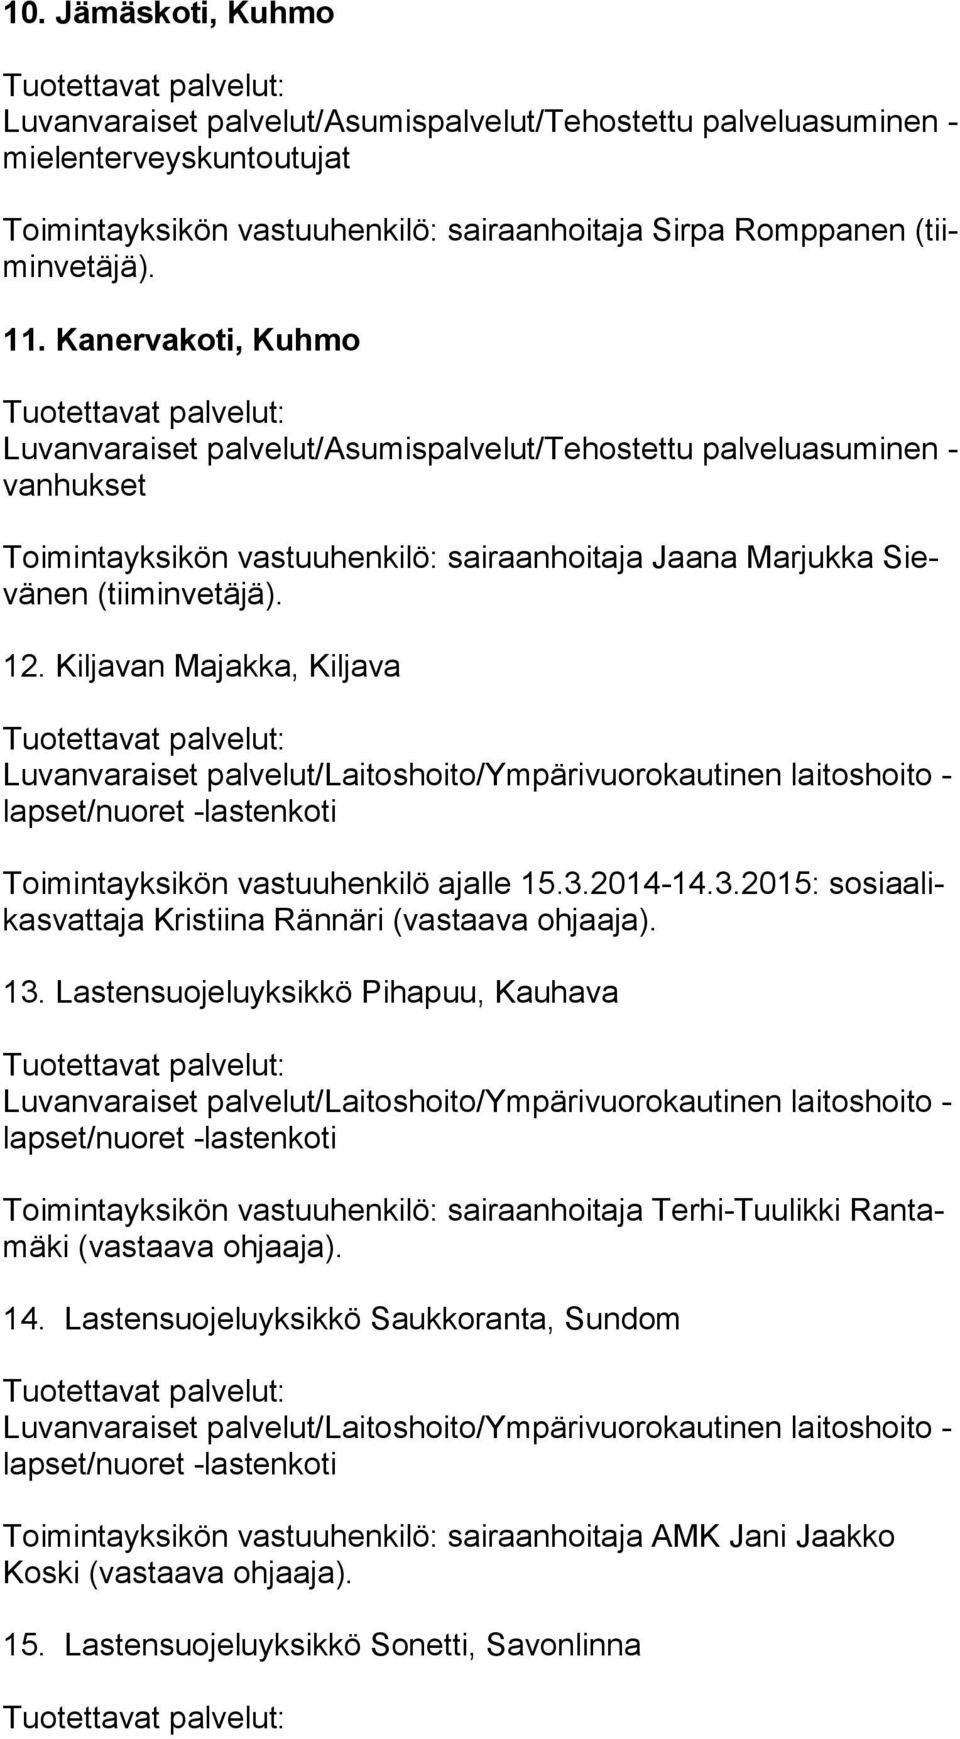 Kiljavan Majakka, Kiljava Luvanvaraiset palvelut/laitoshoito/ympärivuorokautinen laitoshoito - lap set/nuo ret -lastenkoti Toimintayksikön vastuuhenkilö ajalle 15.3.